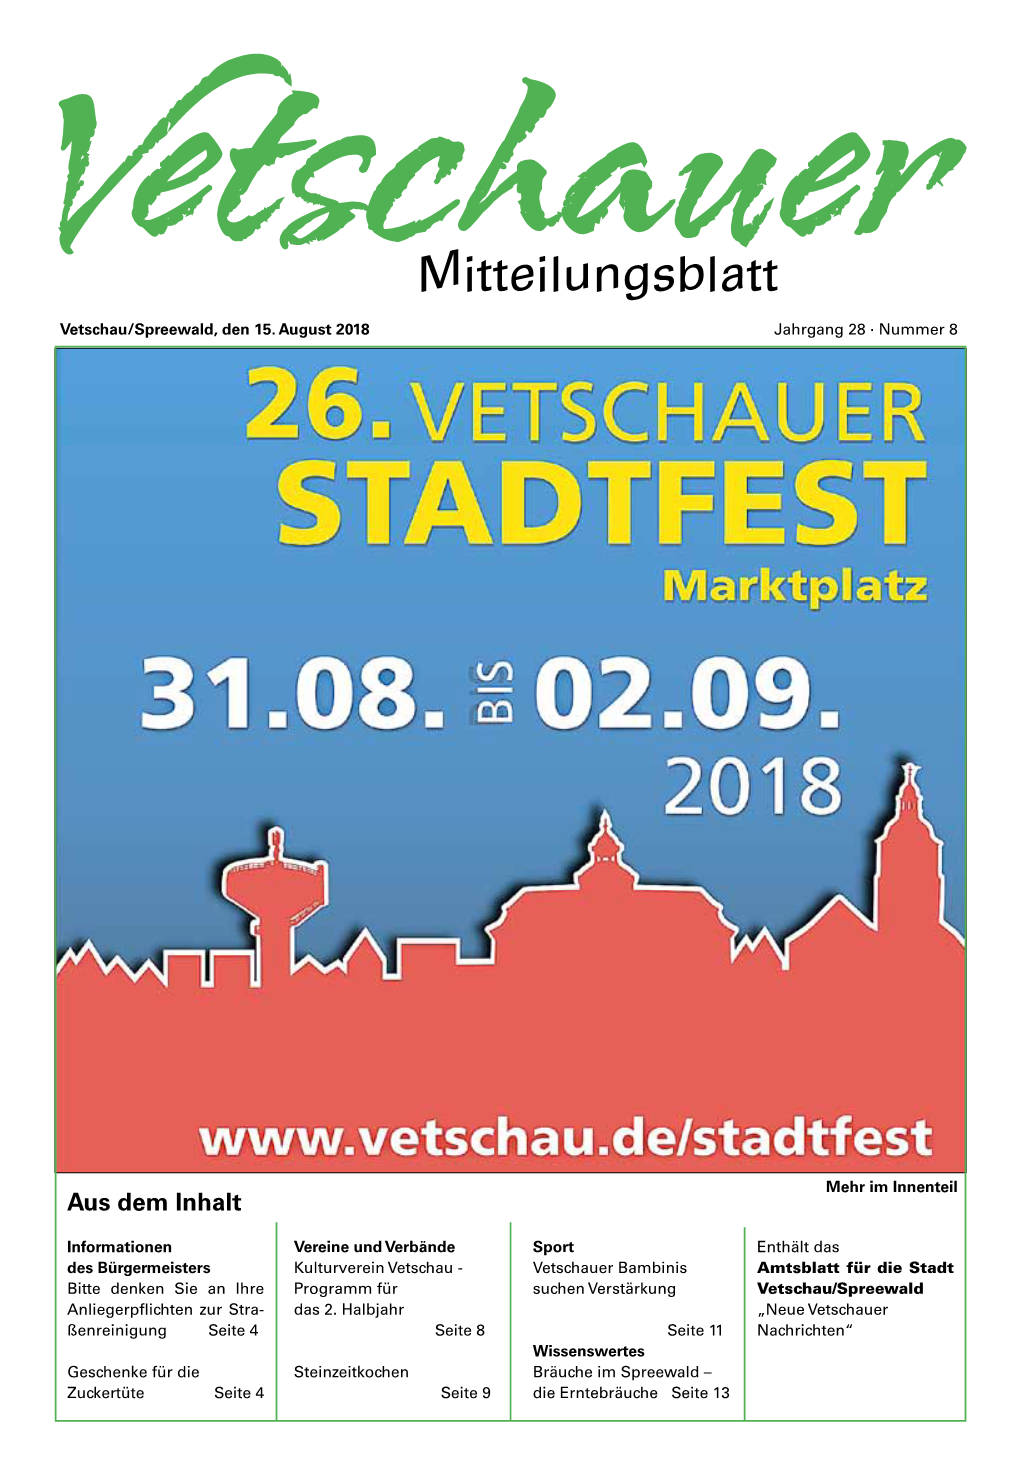 Mitteilungsblatt Vetschau/Spreewald, Den 15